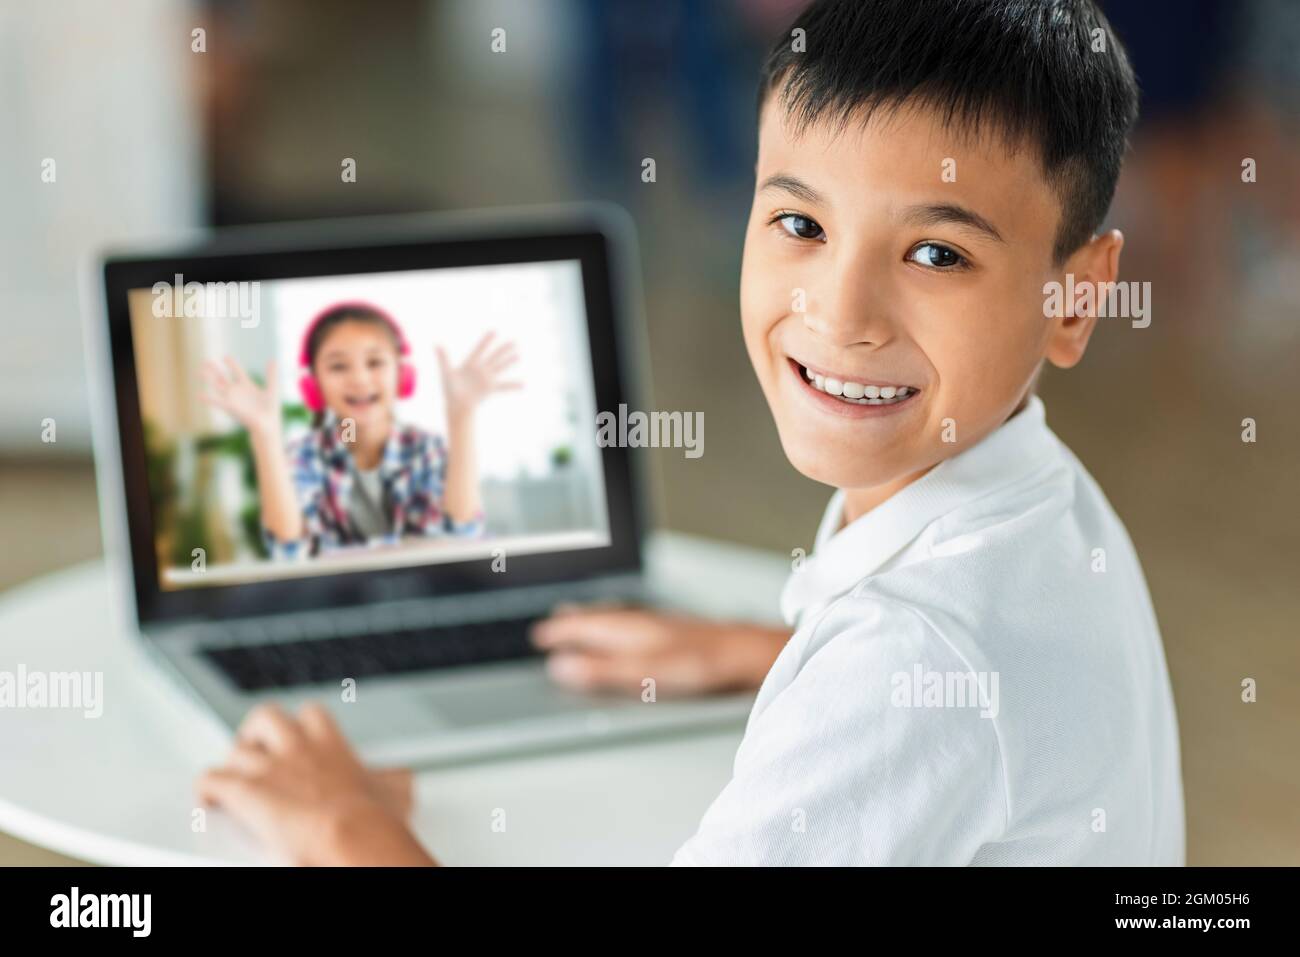 Un garçon heureux rencontre son camarade de classe en ligne avec un ordinateur portable. Banque D'Images